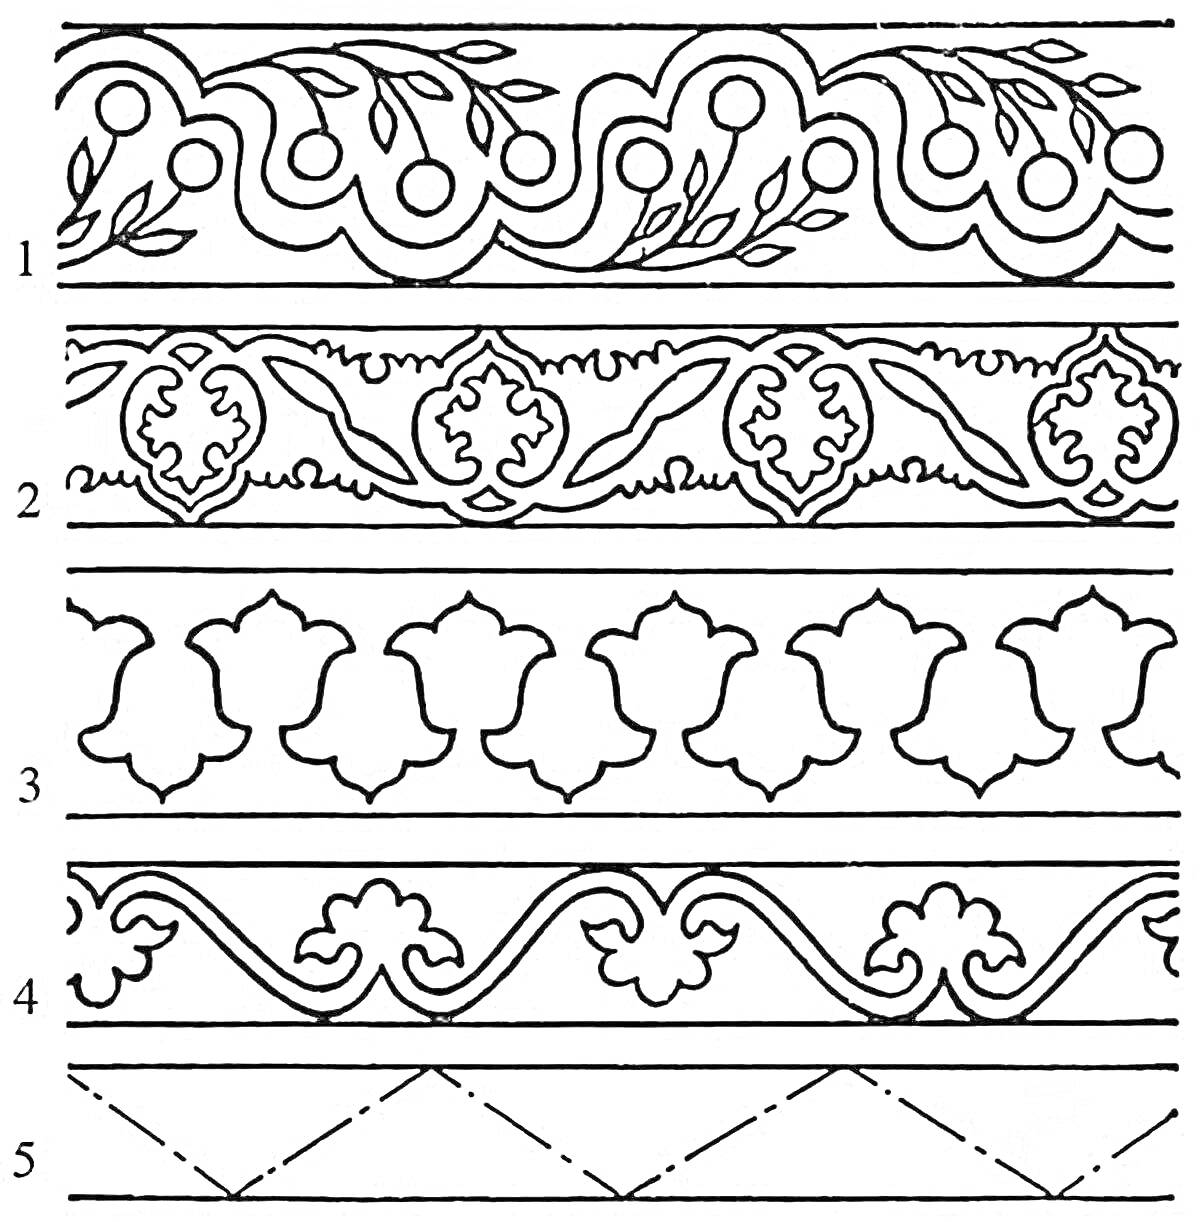 Раскраска татарский орнамент с растительными мотивами и геометрическими узорами, включает узоры из листьев, ветвей, цветочных мотивов, геометрических фигур и линий